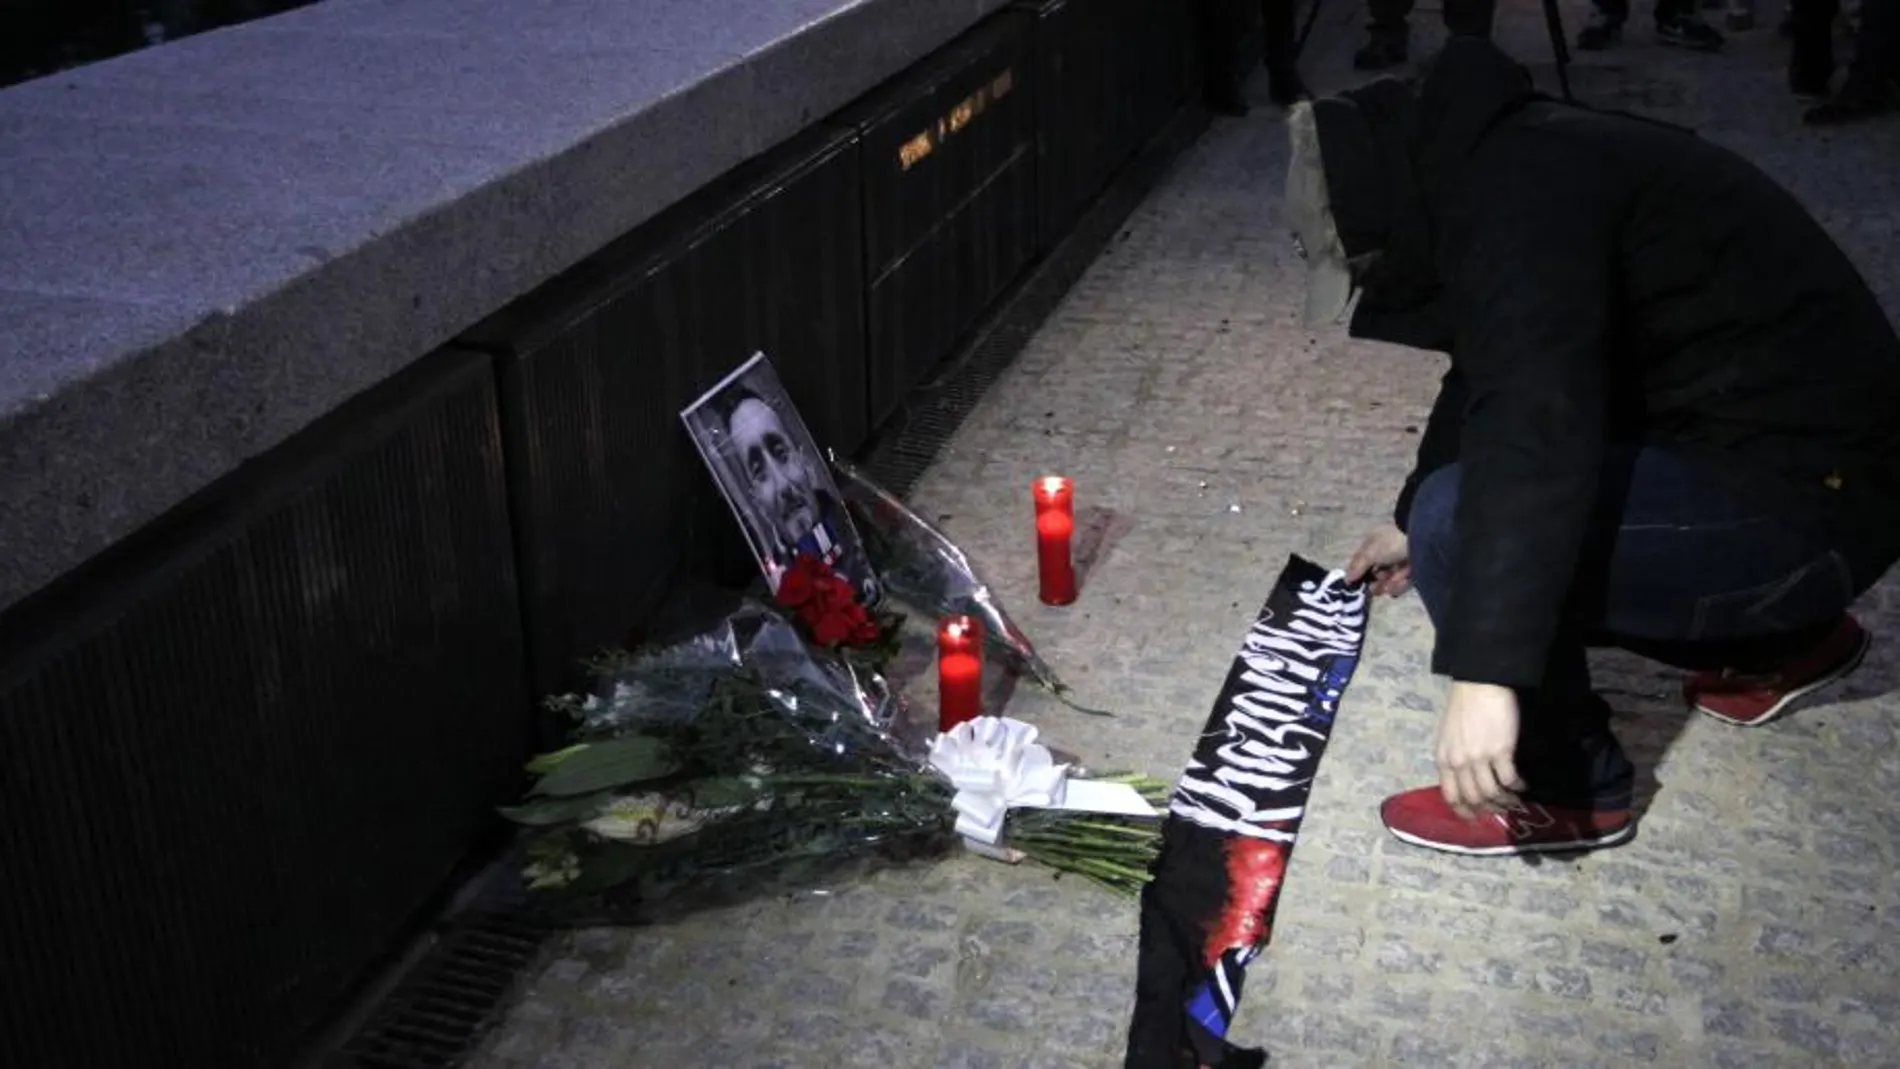 Los ultras han depositado flores en la zona de Madrid Río donde falleció Jimmy